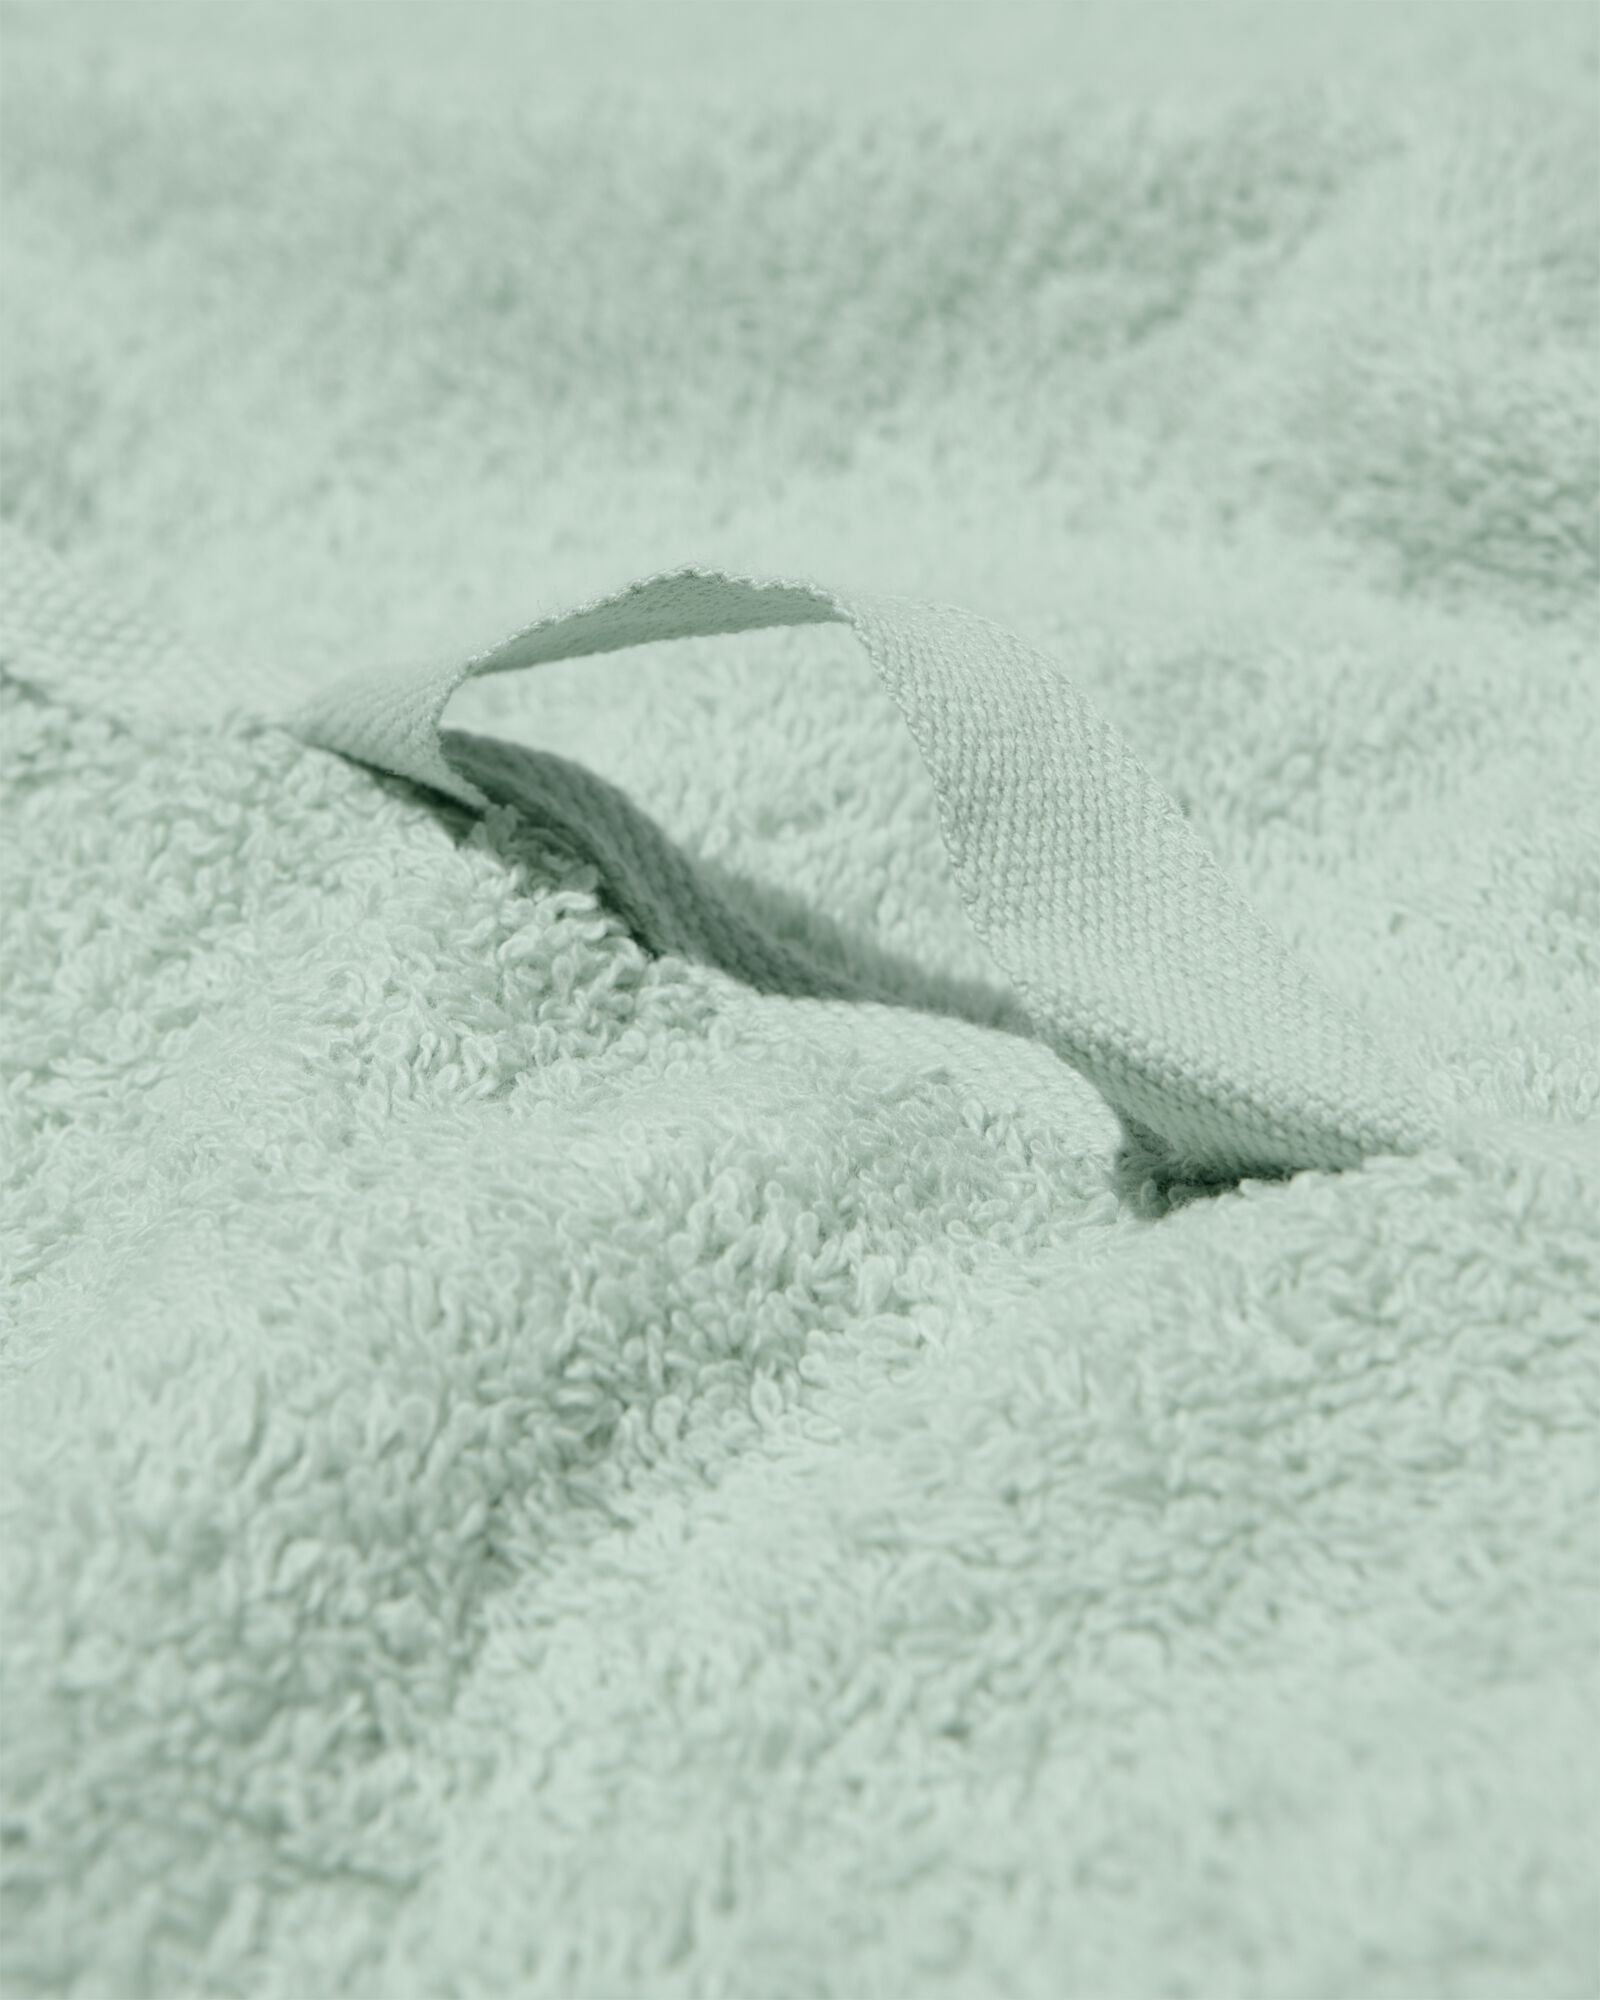 handdoek 100x150 zware kwaliteit poedergroen lichtgroen handdoek 100 x 150 - 5230077 - HEMA